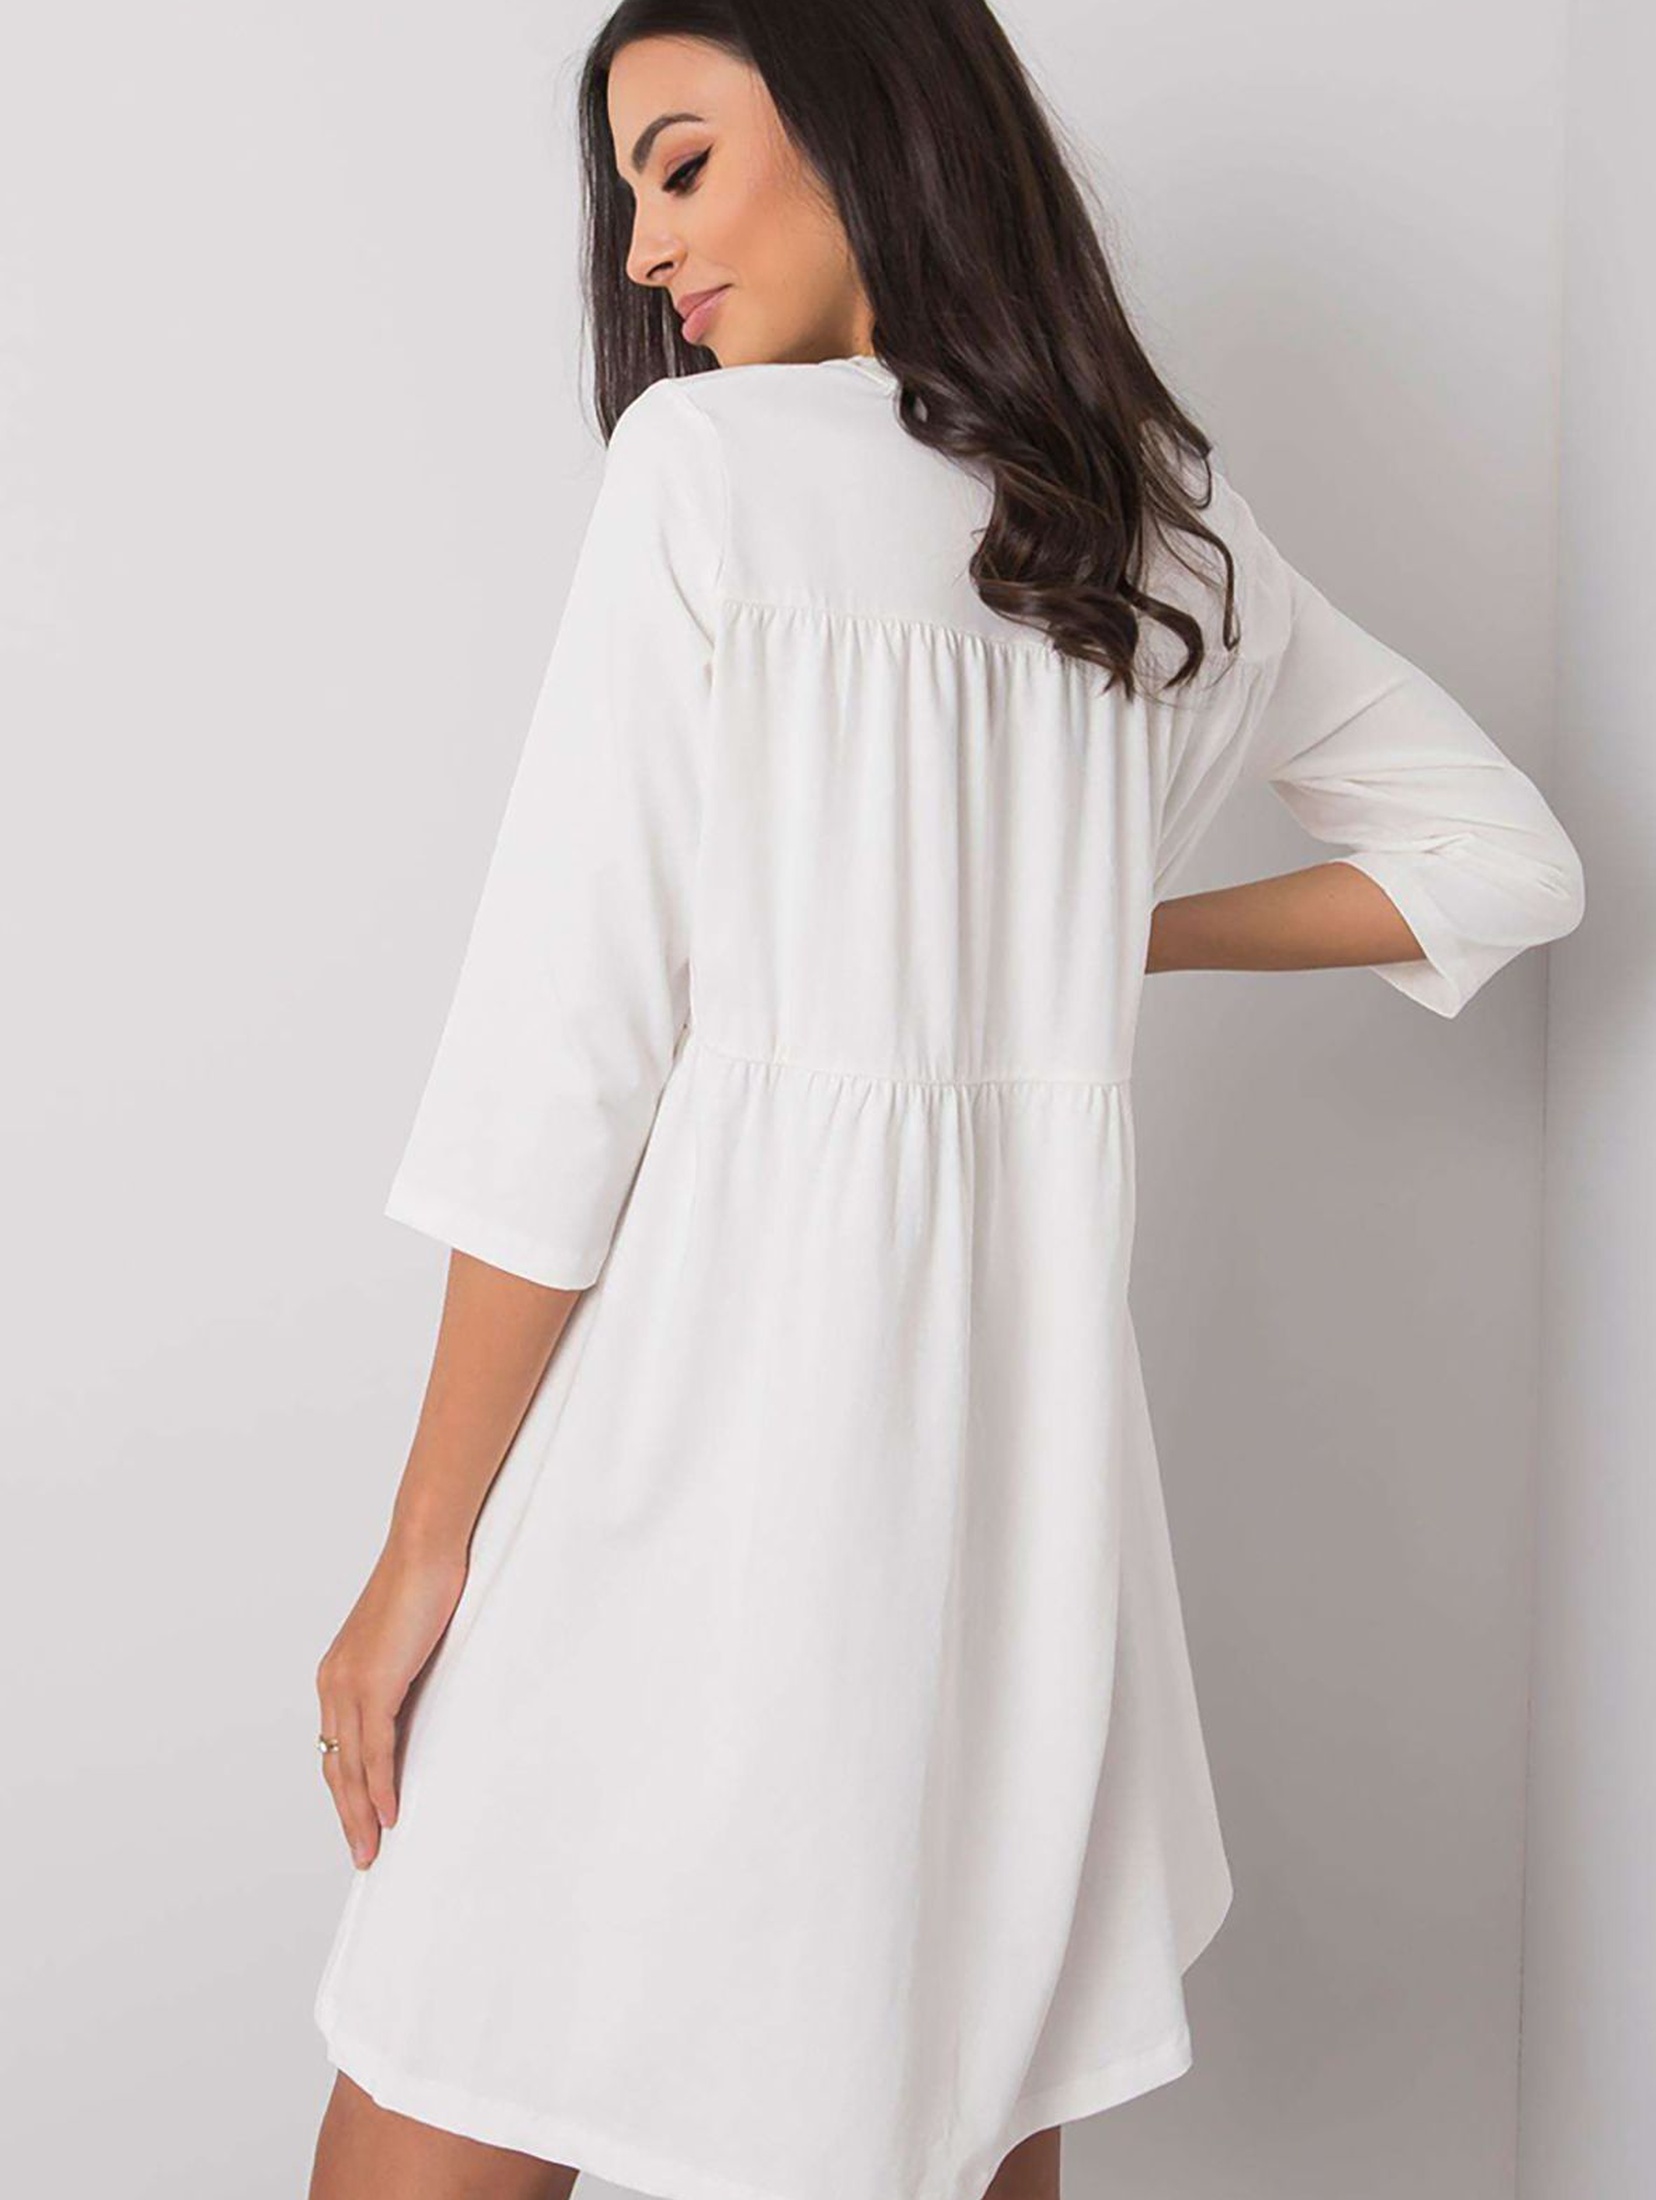 Biała luźna sukienka